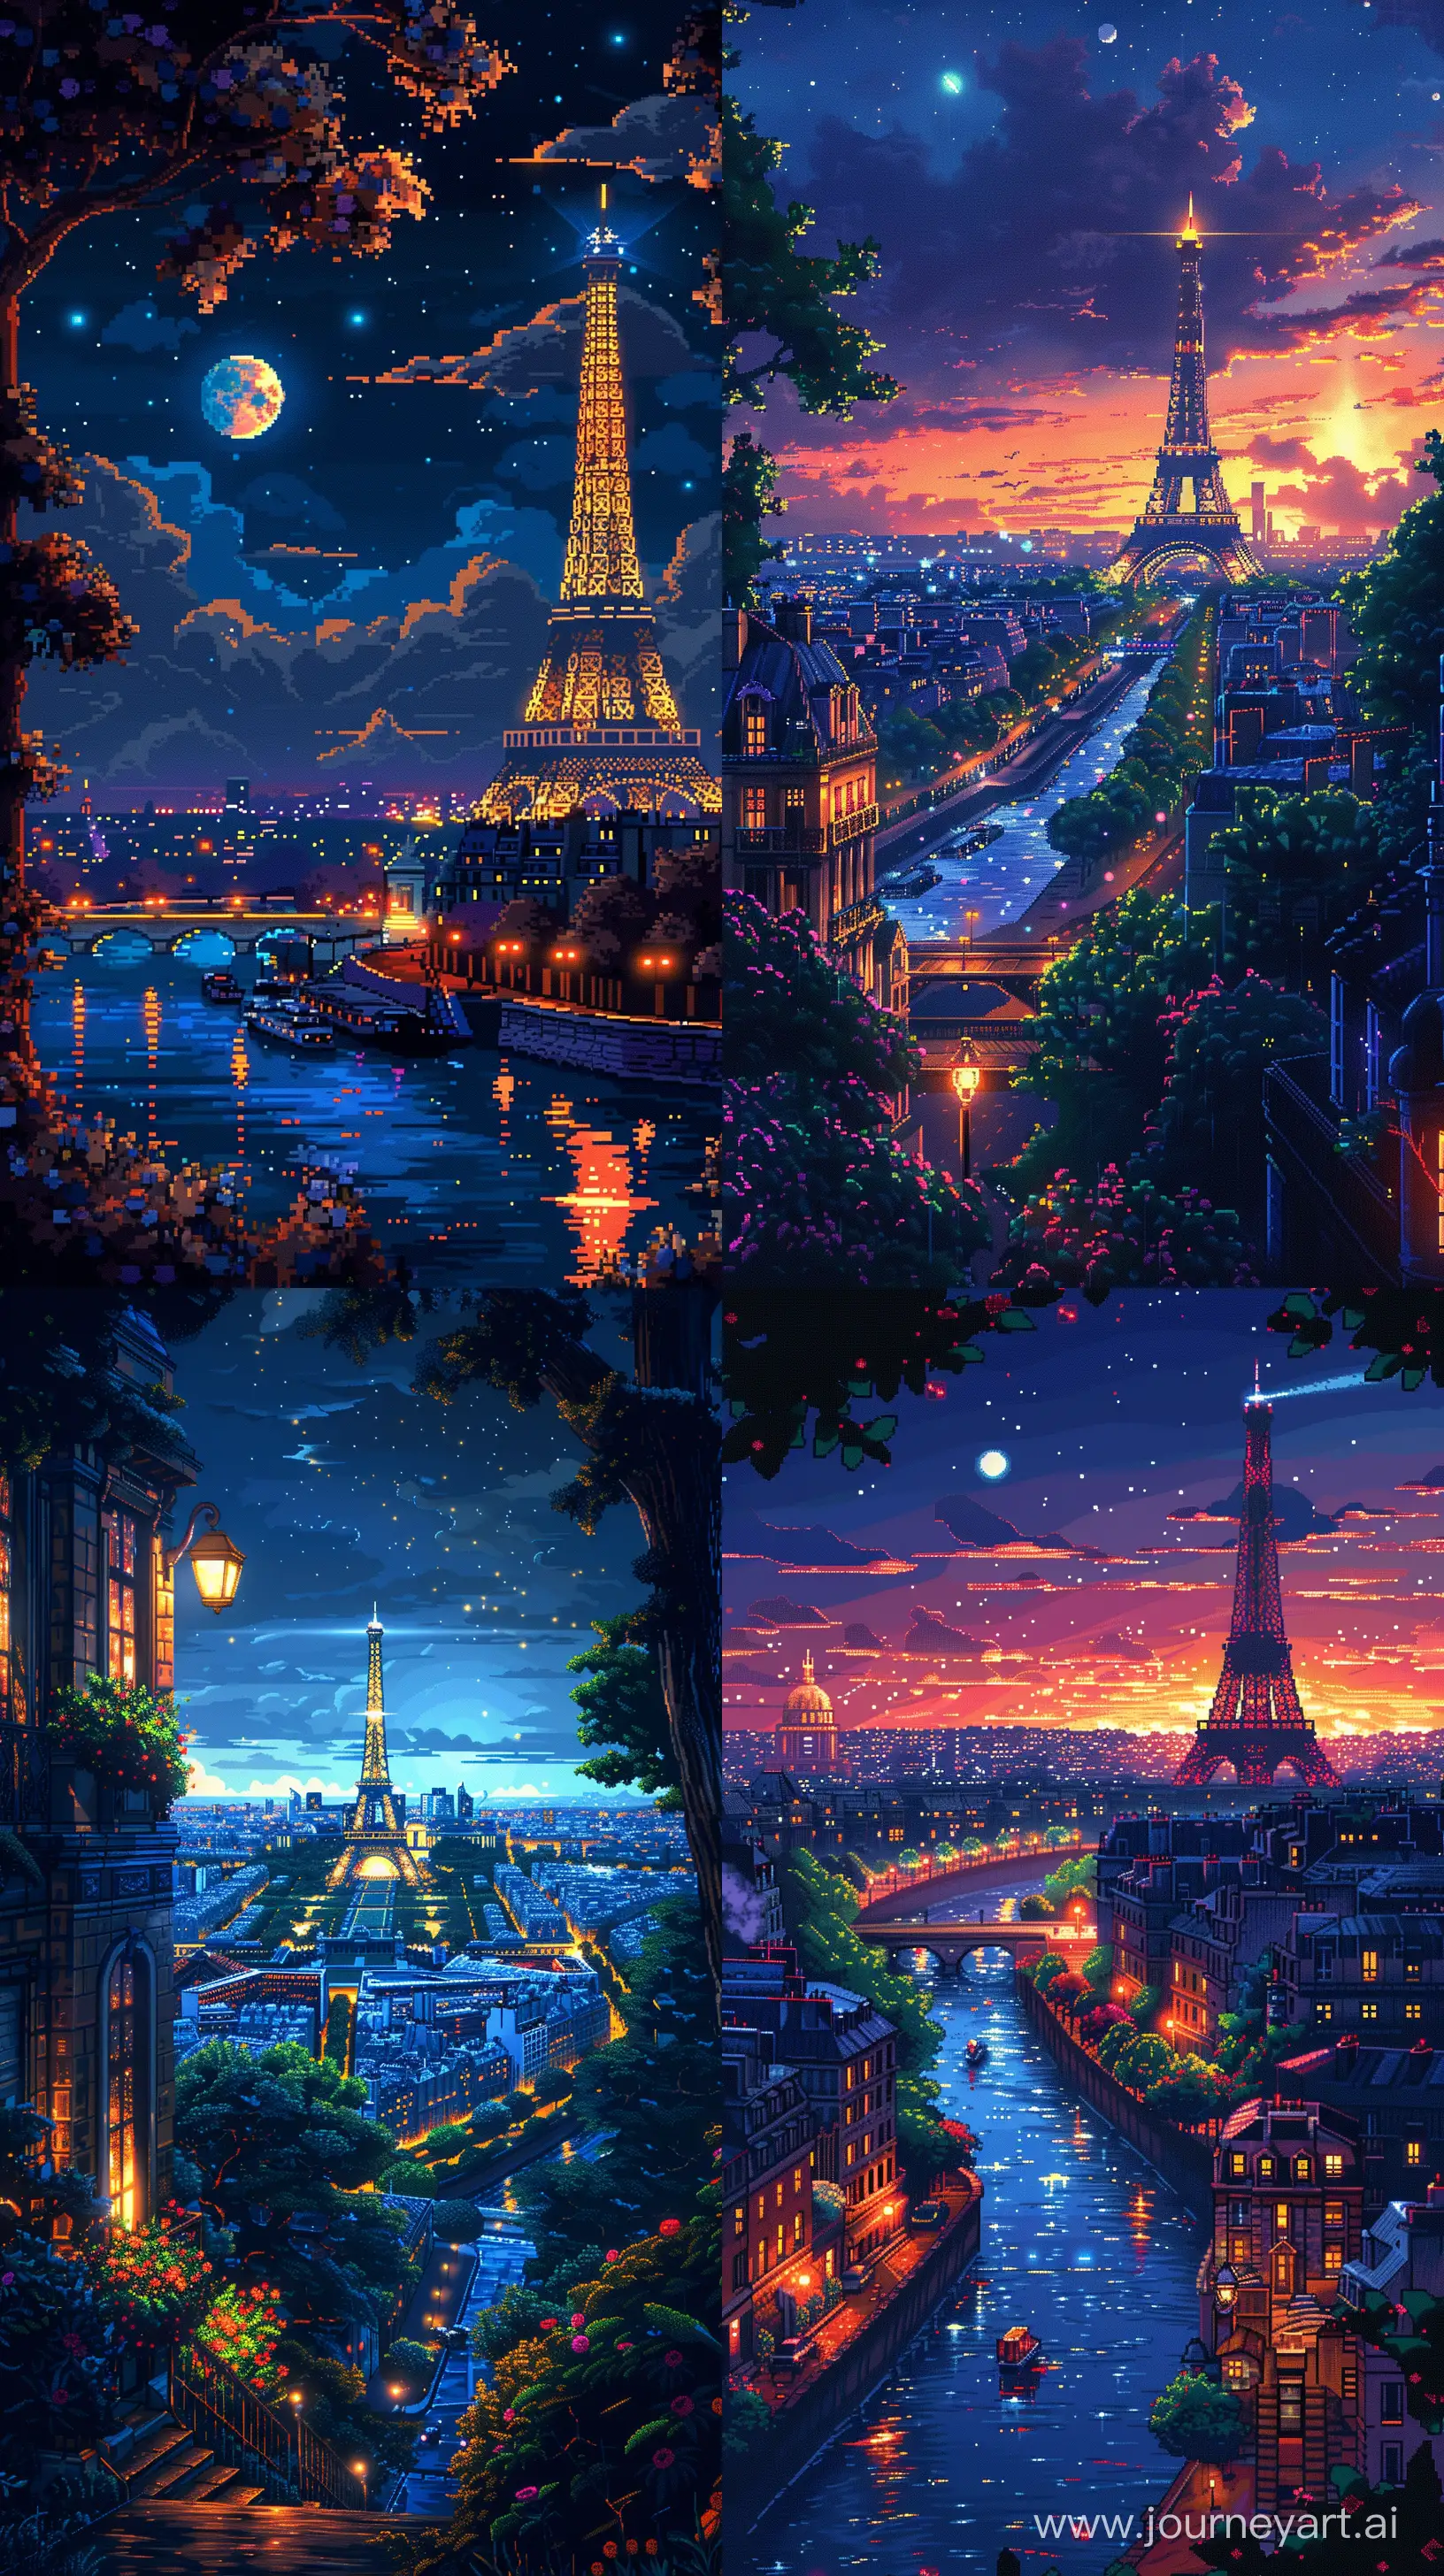 8Bit-Pixel-Art-of-Paris-Cityscape-at-Night-with-Retro-Color-Details